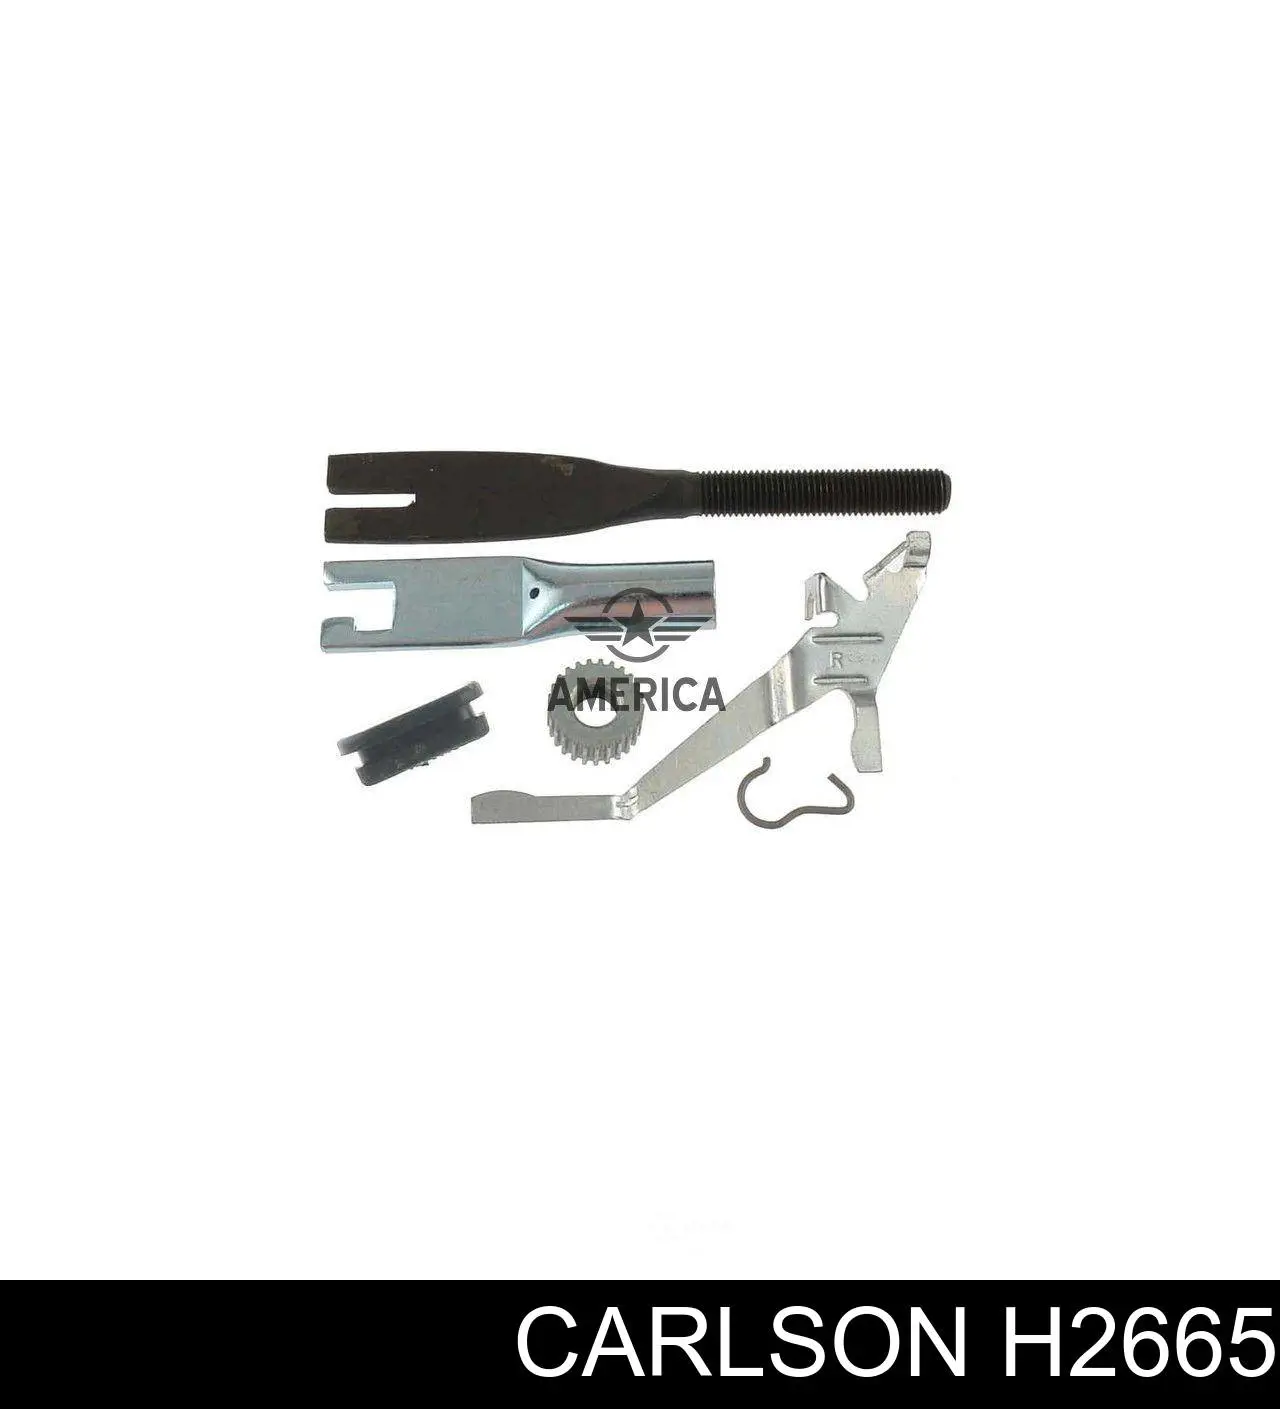 H2665 Carlson механизм подвода (самоподвода барабанных колодок (разводной ремкомплект))